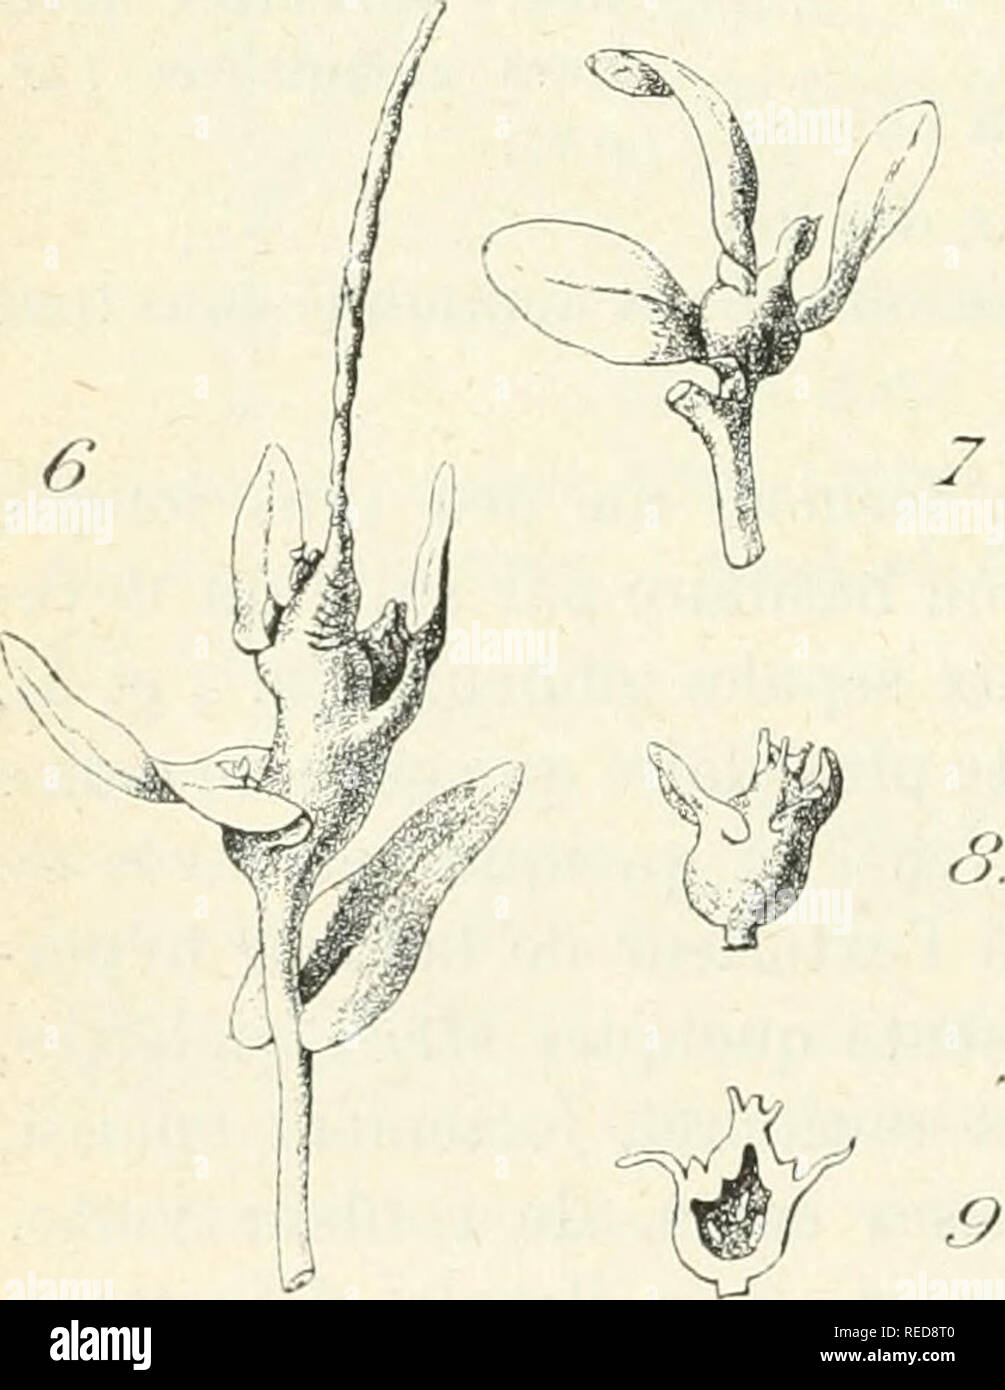 . Compte rendu. Science; Science -- Congresses. Diptérocécidie florale de Moricandia arvensis var. sujffruticosa. Fig. 4- — Aspect d'une fleur saine ( gr. 0,8). Fig. 5. Inflorescence et fleur parasitée ( gr. 0,8).. Diptérocécidie caulinaire de Morican- dia arvensis var. suffruticosa. Fig. 6. — Galle située dans Tinflores- cence(gr. 0,8). Fig. 7. — Région terminale parasitée d'un rameau jeune ( gr. 0,8). Fig. S. — Cécidie terminale de forme globuleuse ( gr. 0,8). Fig. 9. — Section longitudinale de la galle précédente (gr. 0,8).. Please note that these images are extracted from scanned page imag Stock Photo